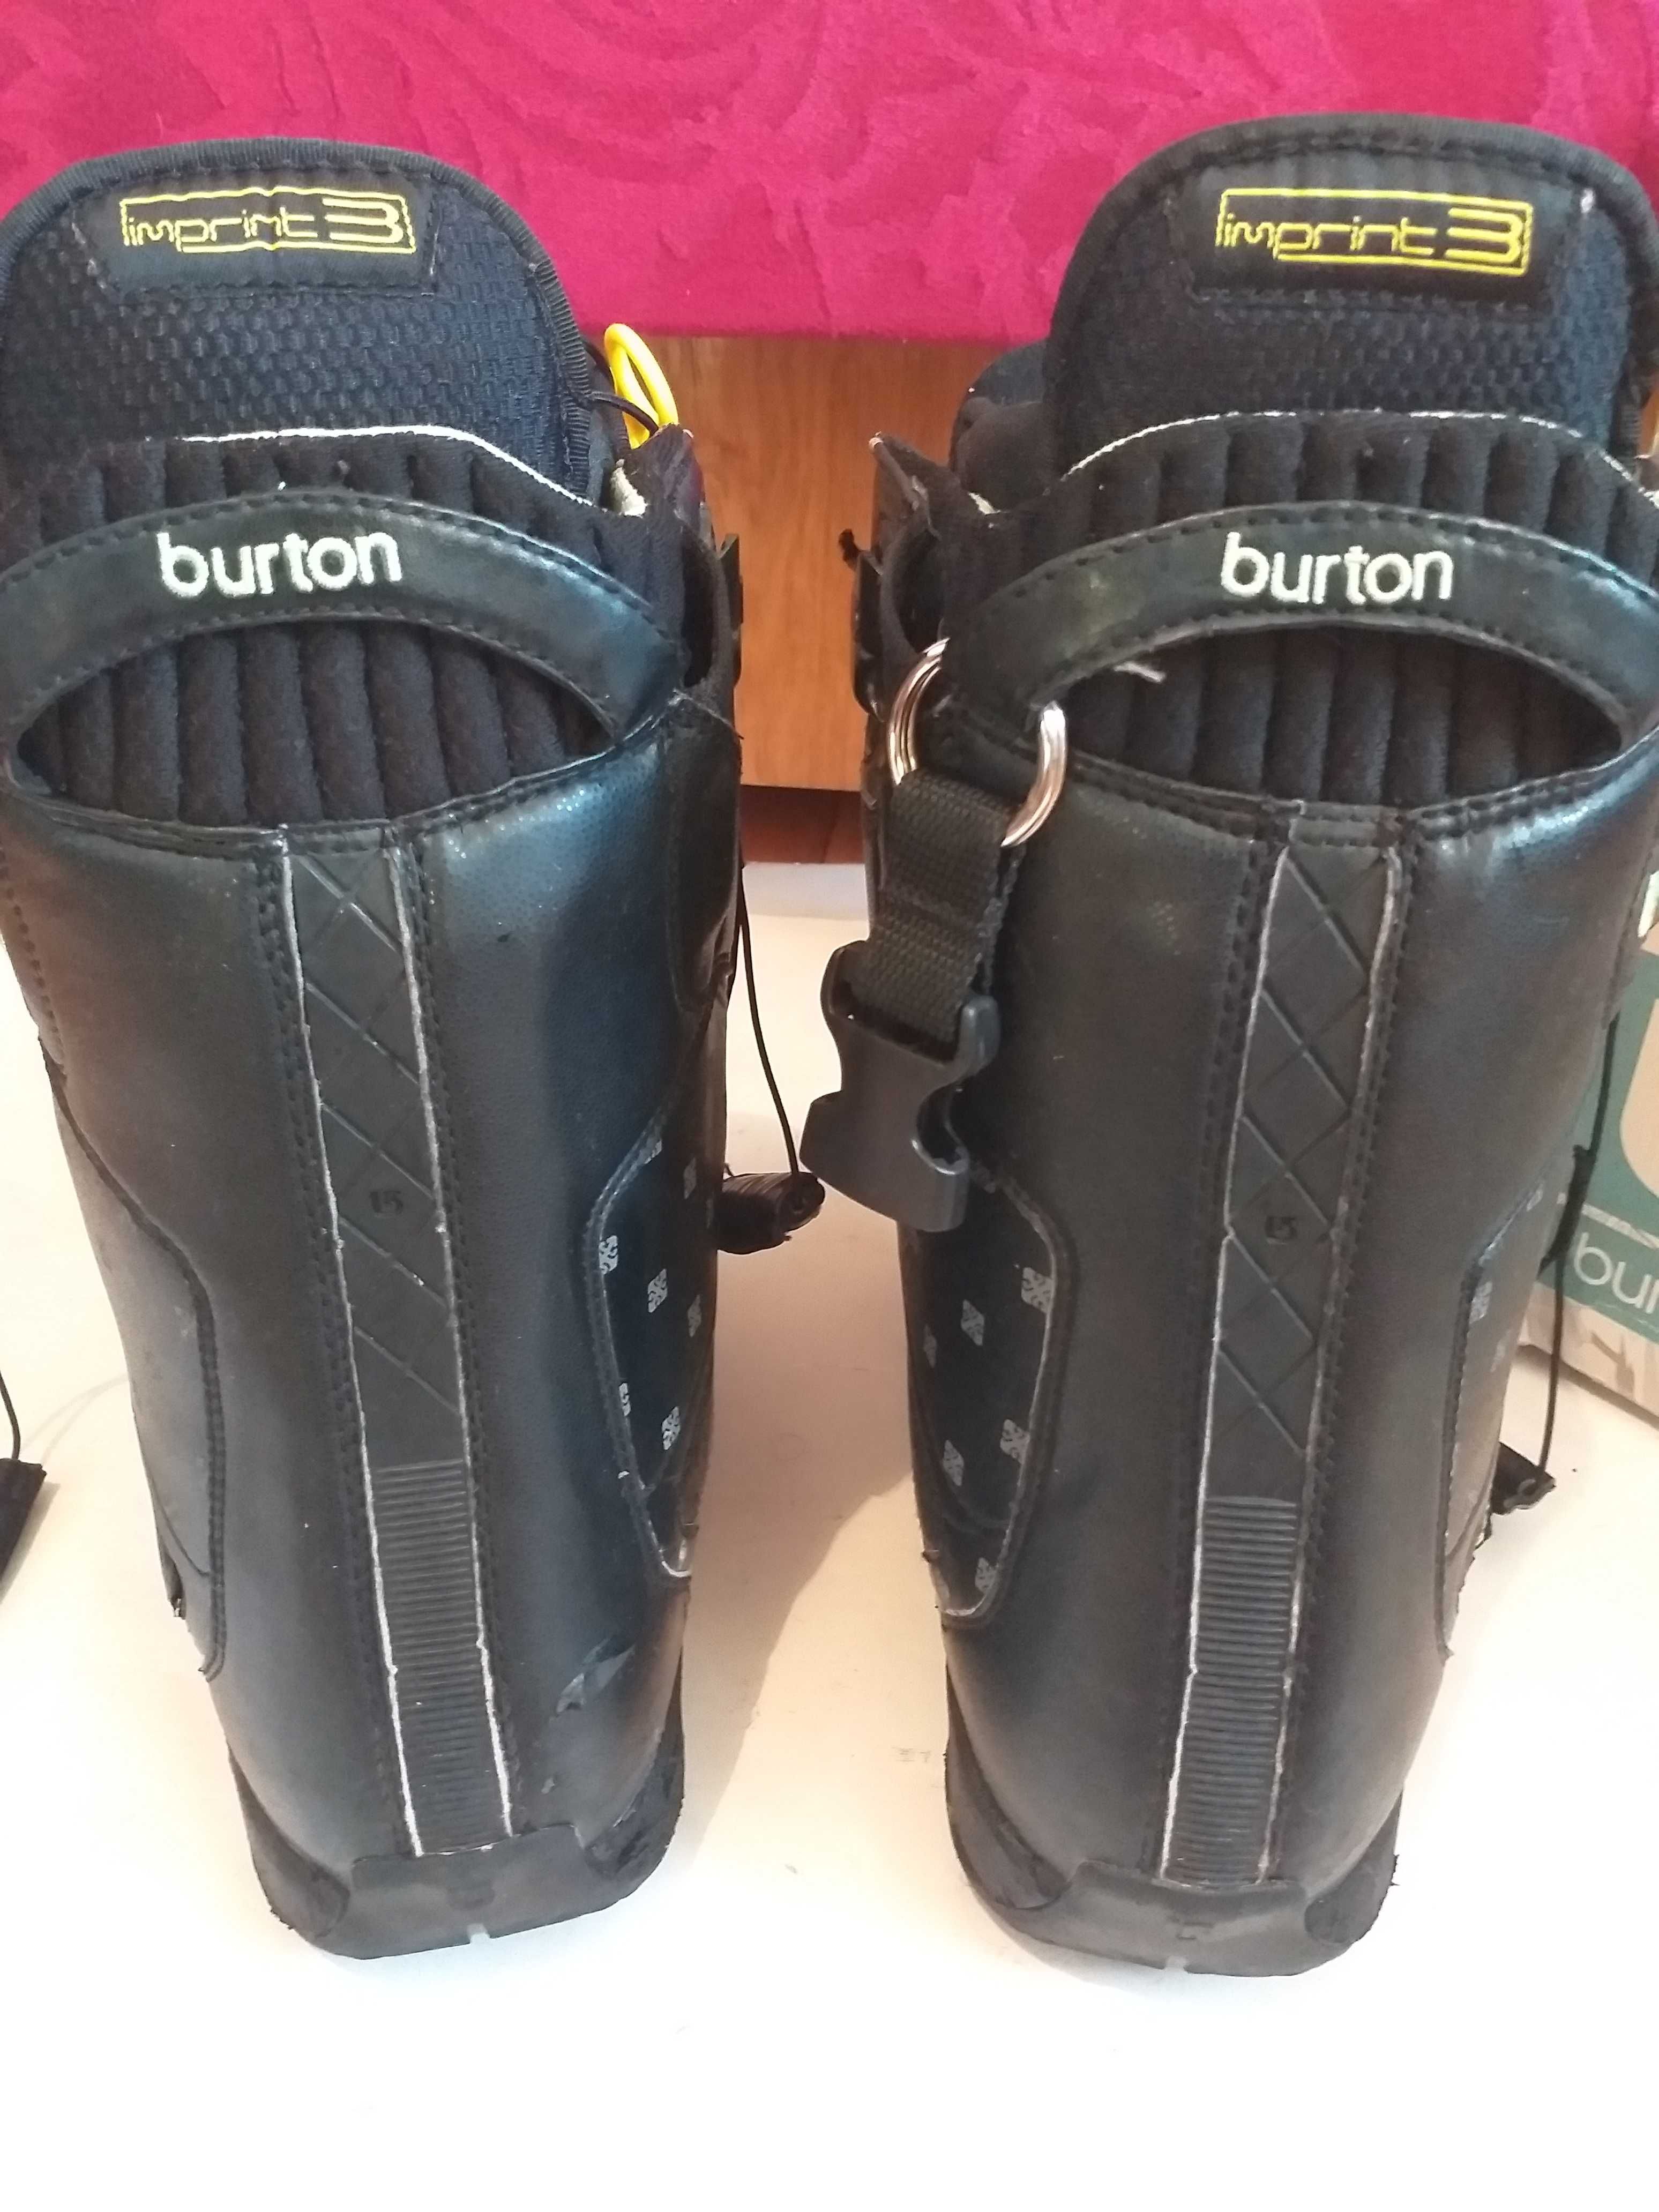 Pereche Boots marca Burton,Număr. 40,cu defecte,urme uzura